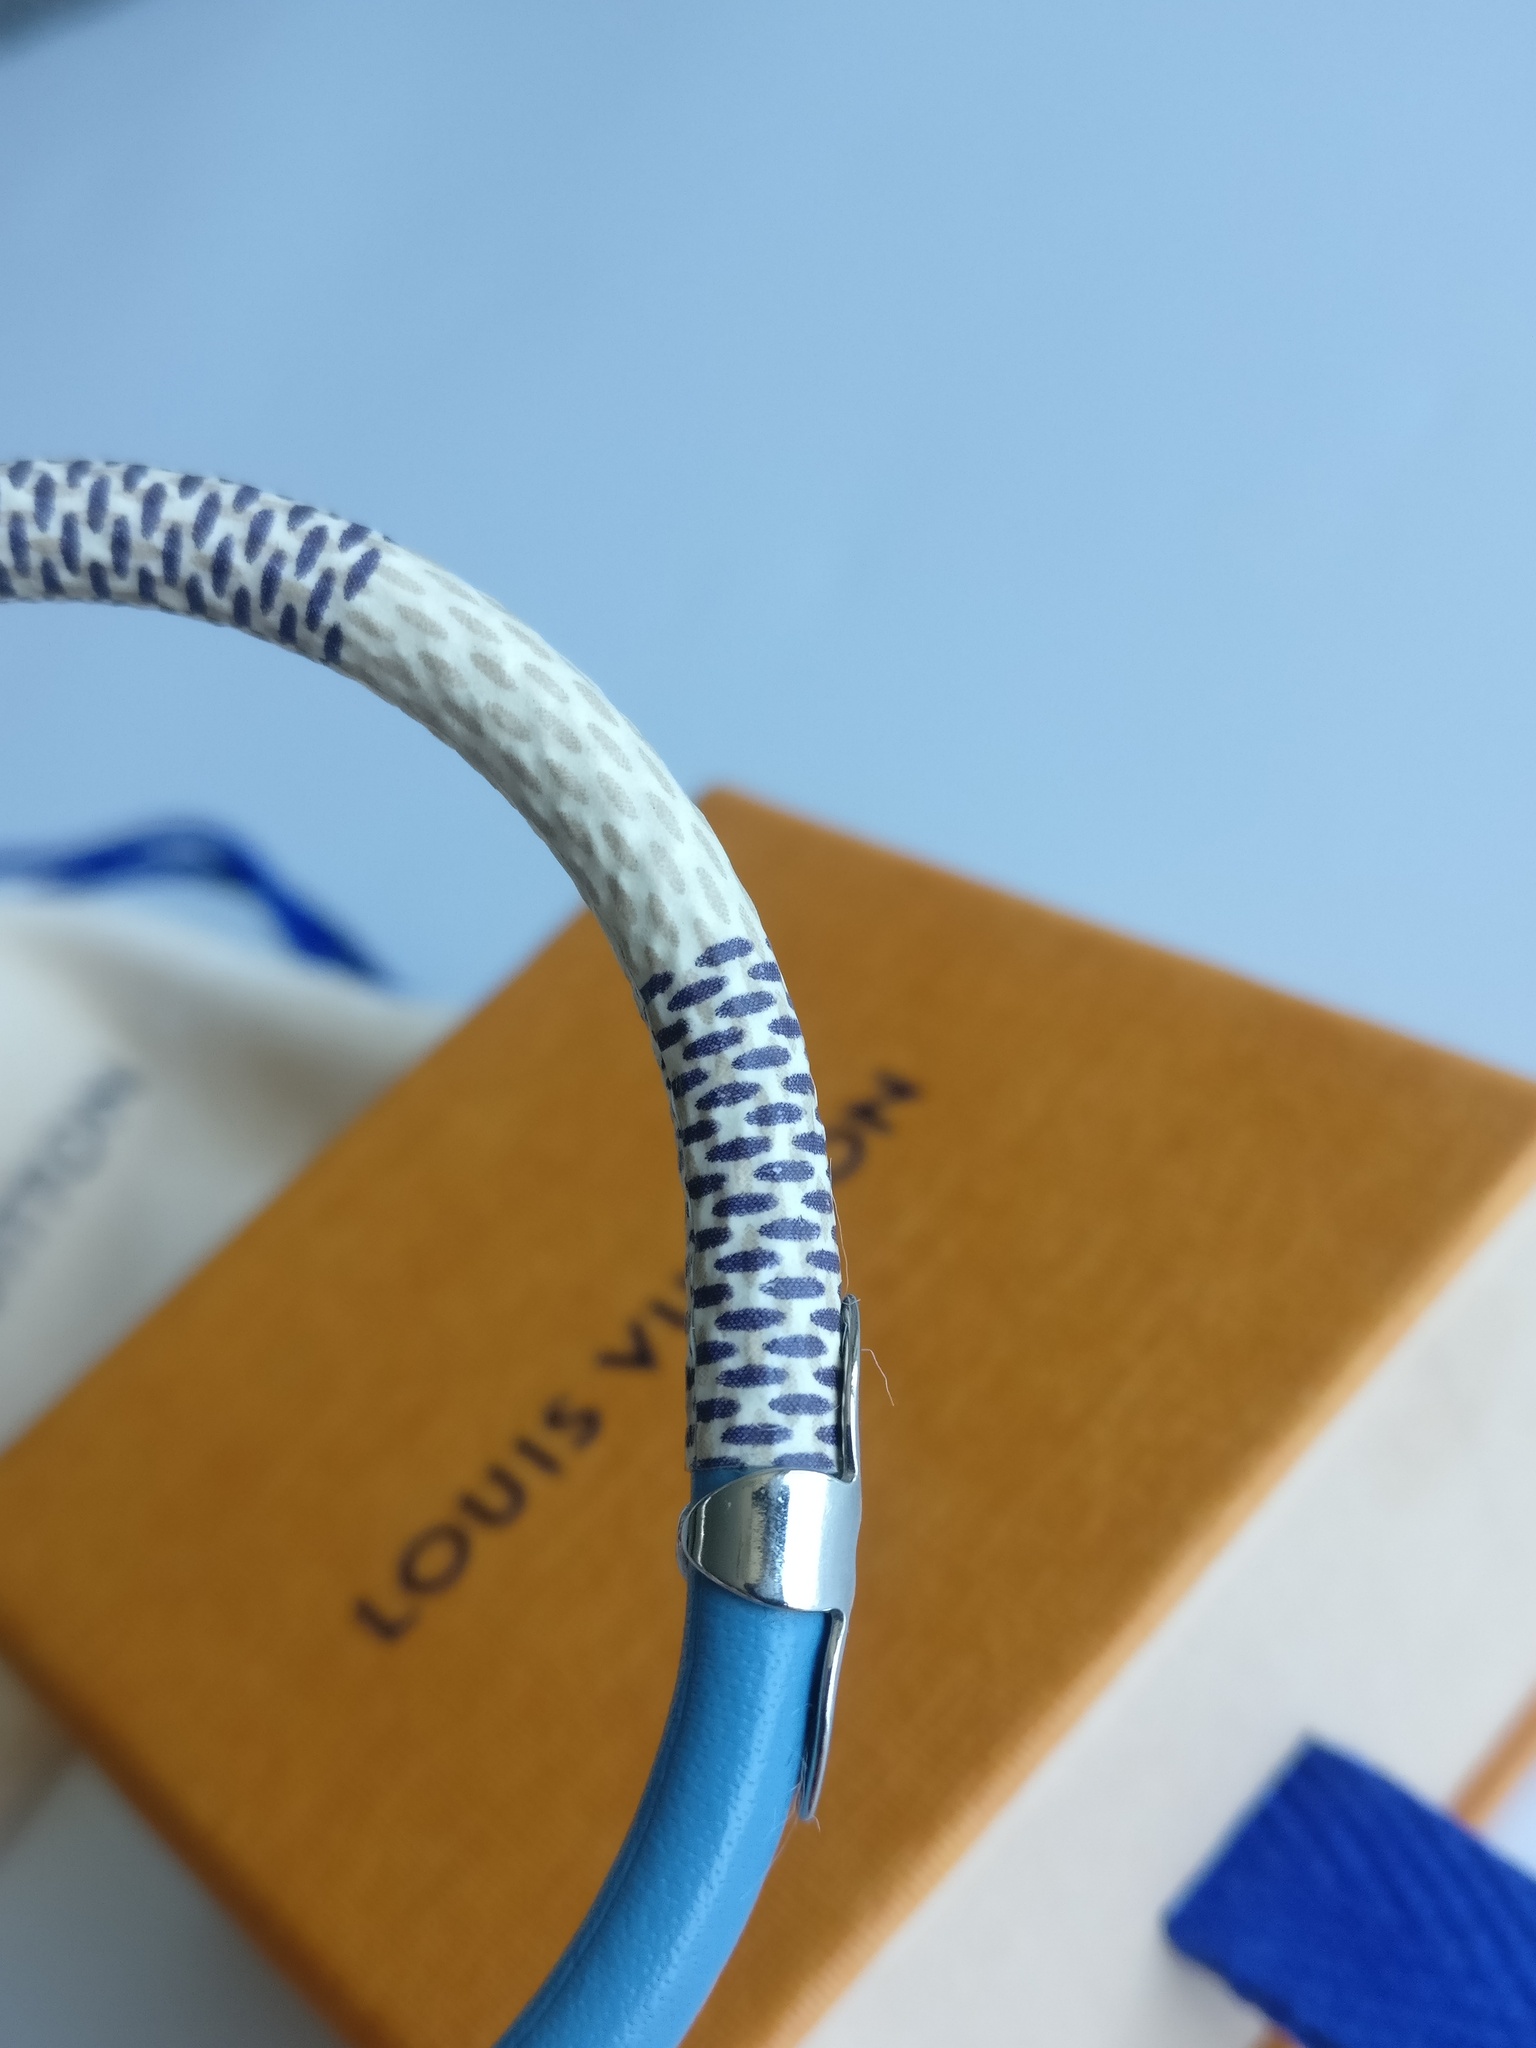 Louis Vuitton Keep It Bracelet Damier Azur White/Blue